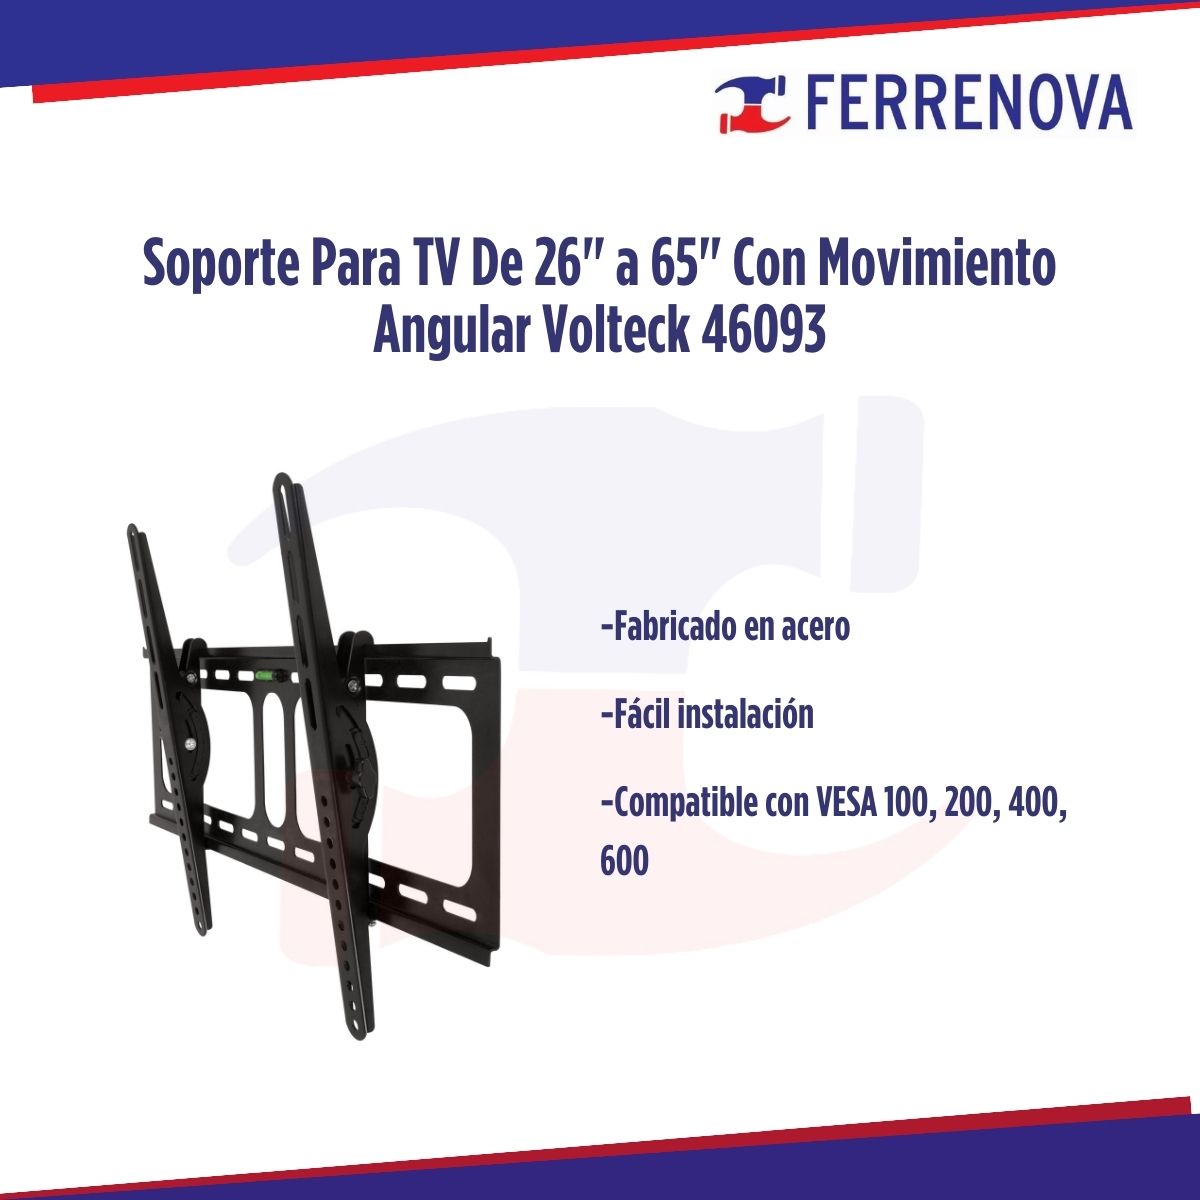 Soporte Para TV De 26" a 65" Con Movimiento Angular Volteck 46093